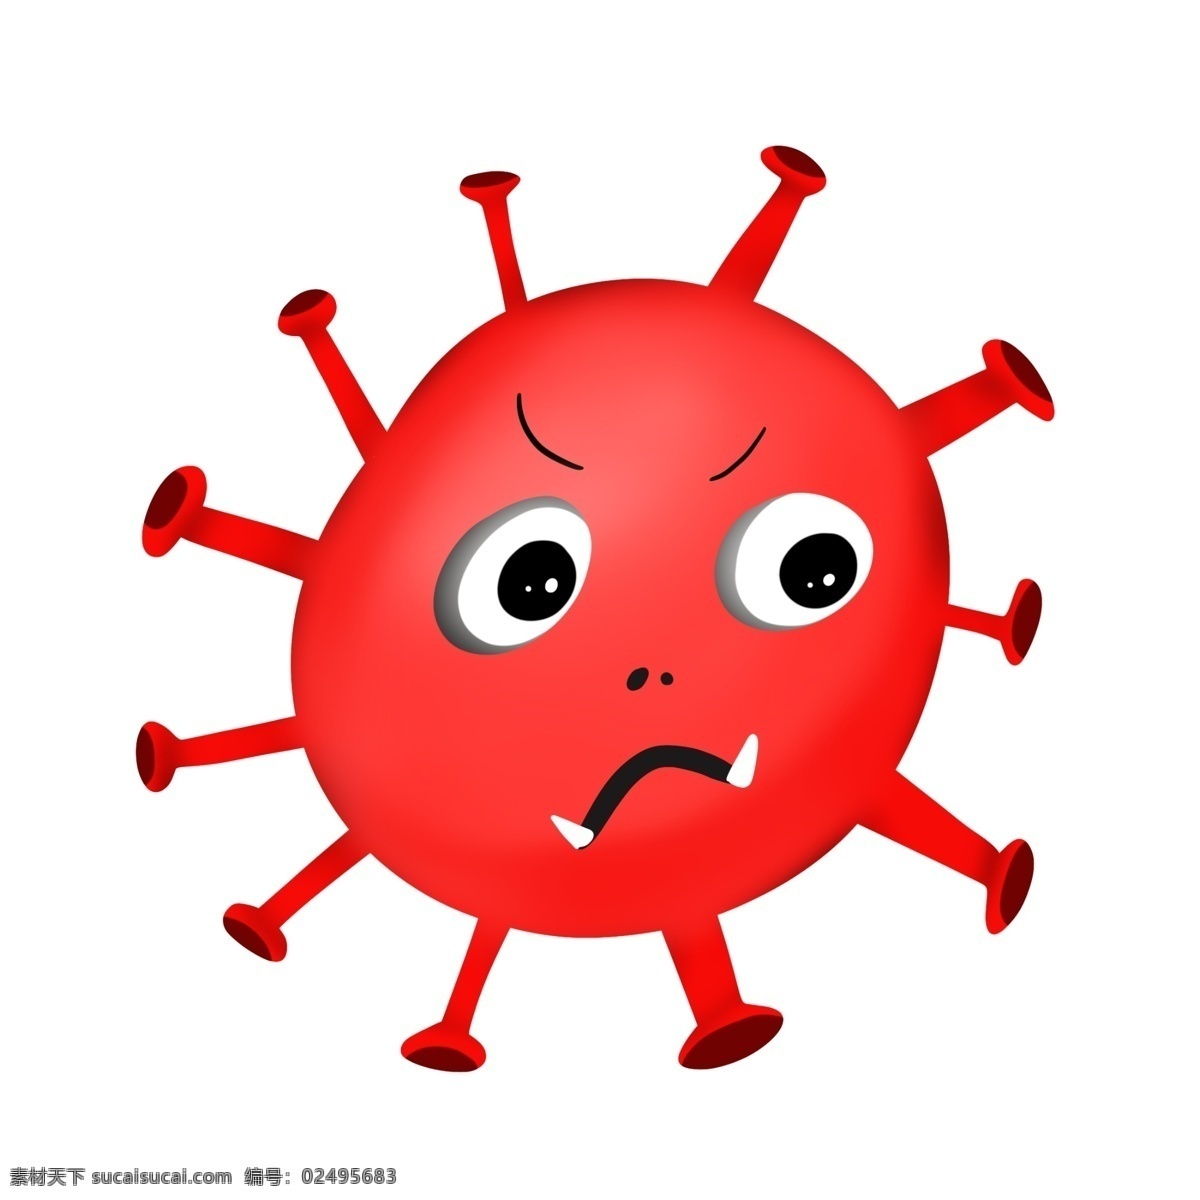 红色 有害 细菌 插画 红色的细菌 卡通插画 有害细菌 细菌插画 病菌插画 病菌细菌 大眼睛细菌